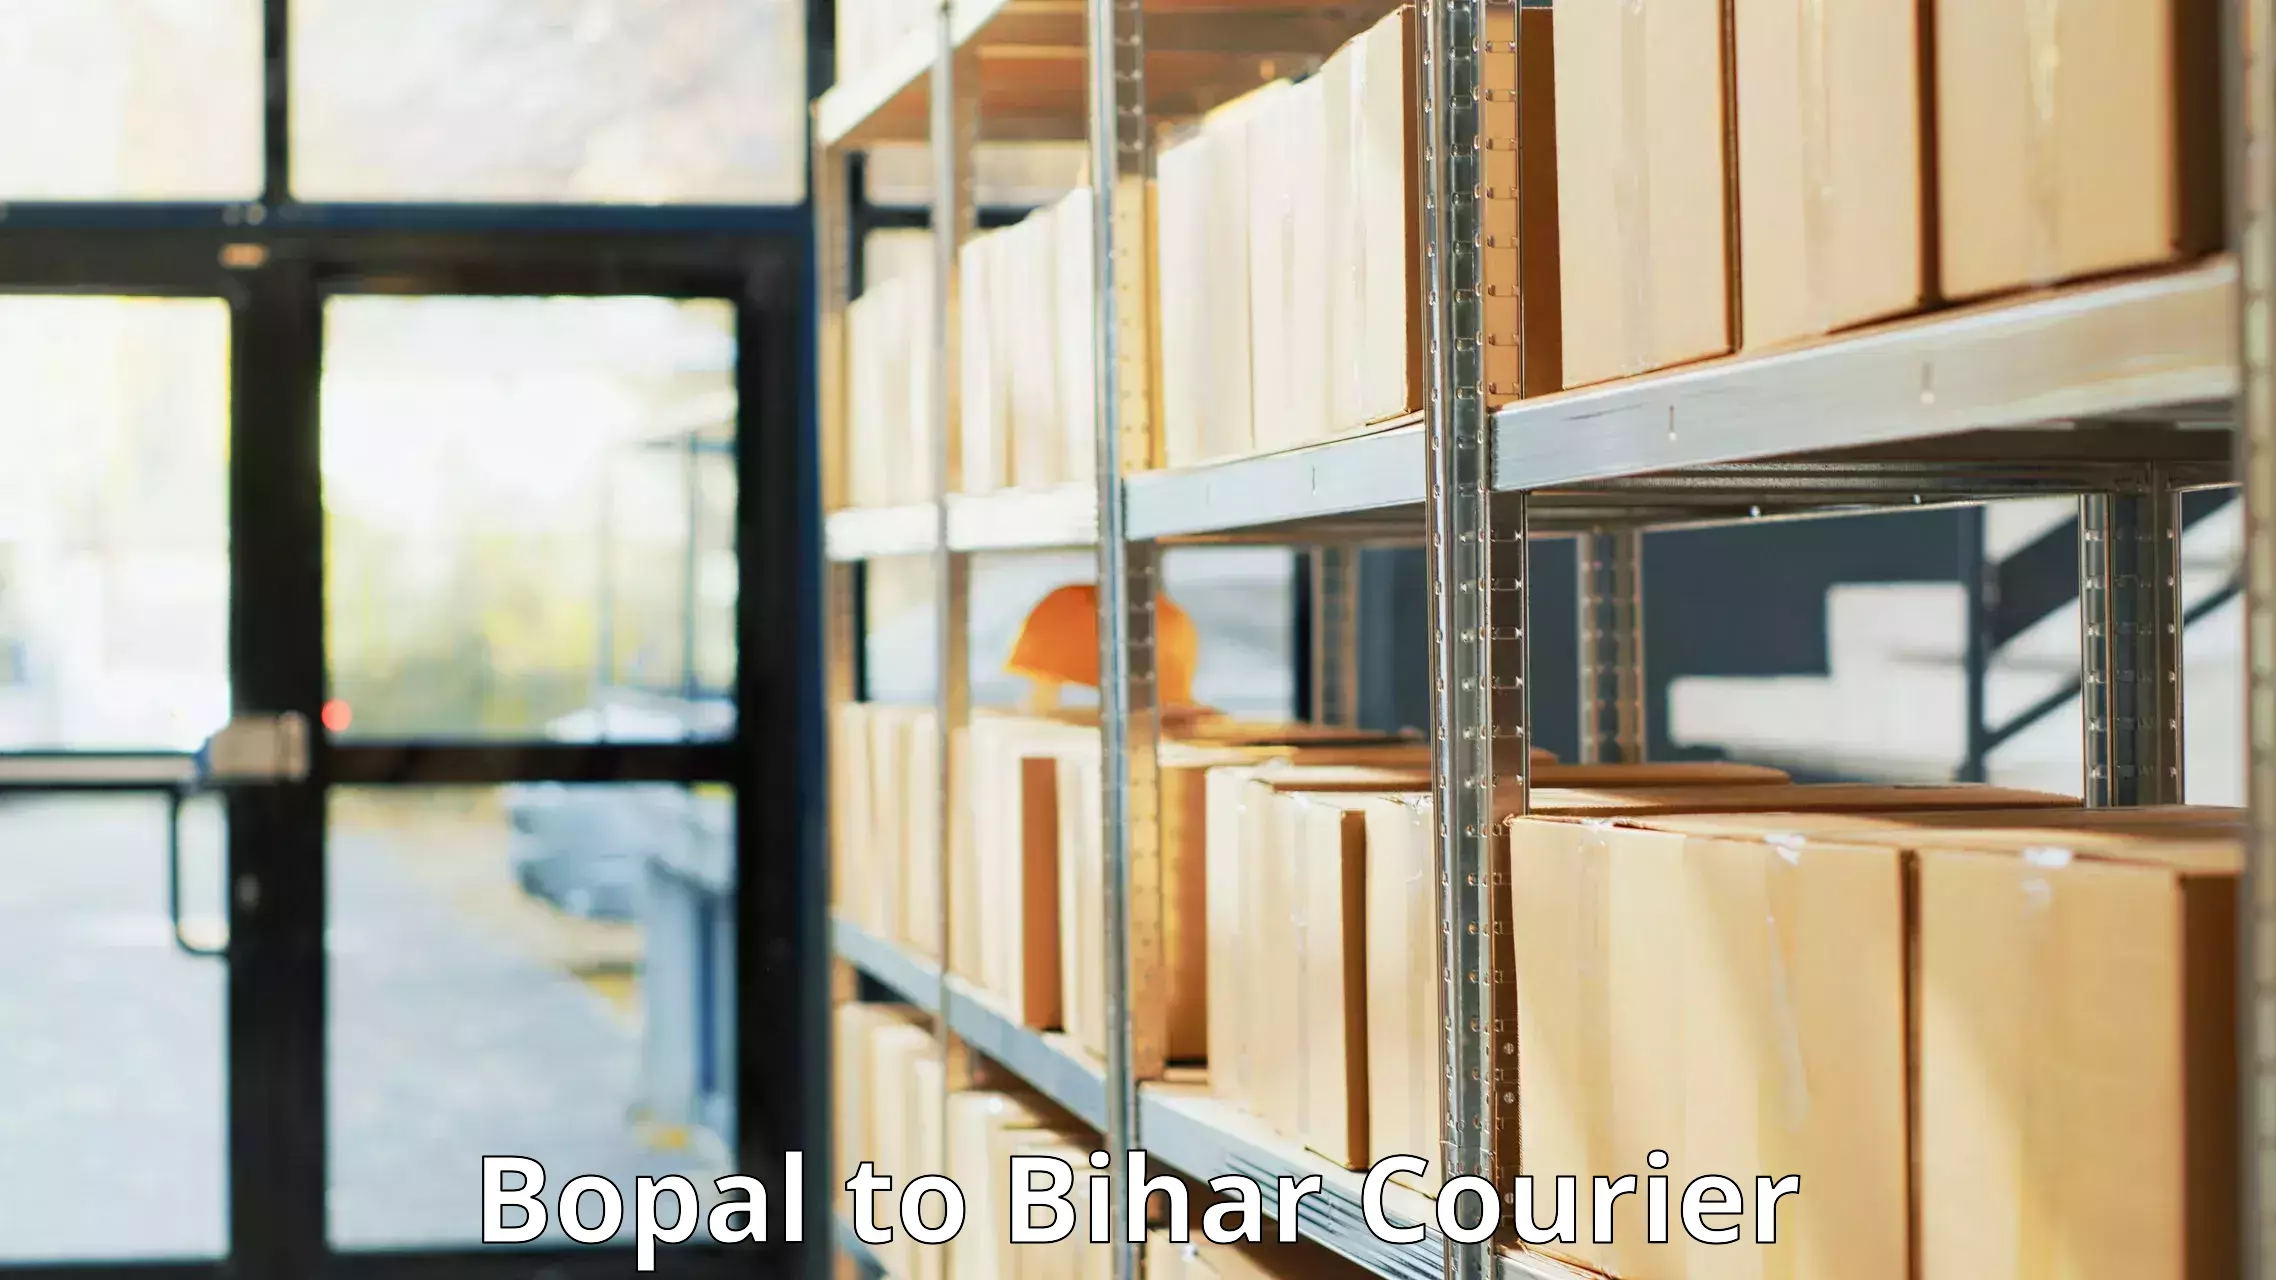 Courier service comparison Bopal to Lalganj Vaishali